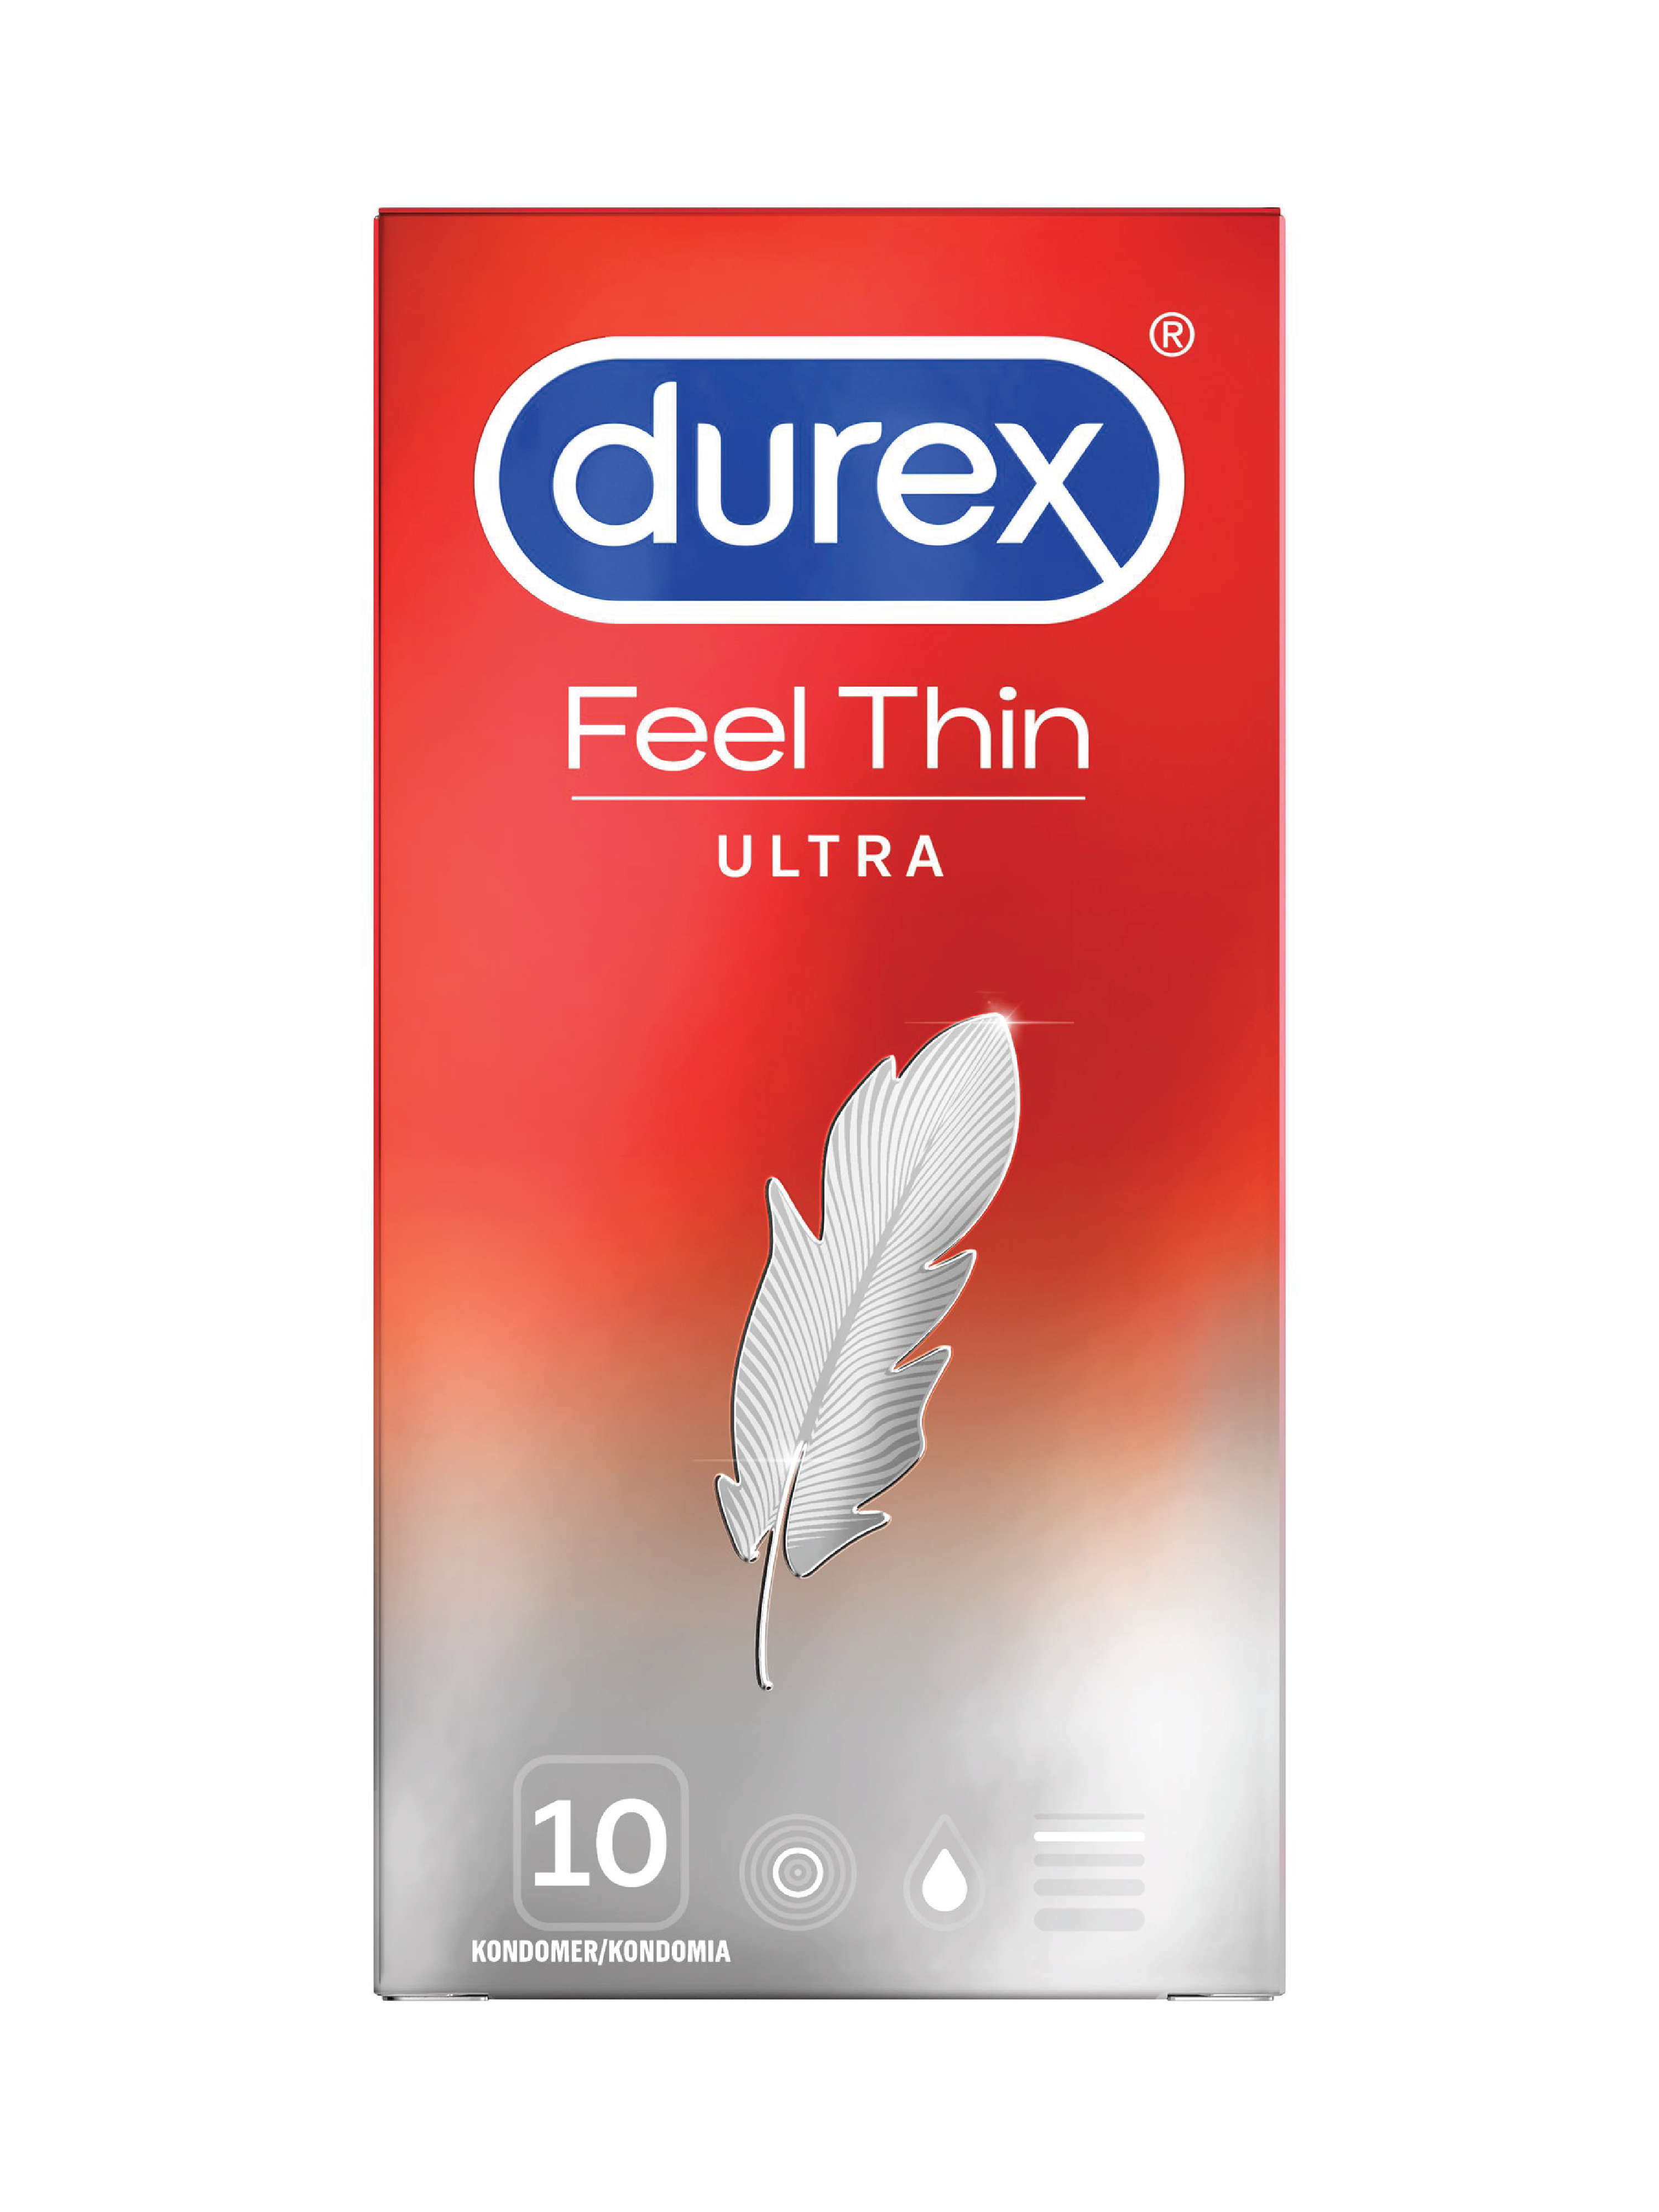 Durex Feel Ultra Thin Kondom, 10 stk